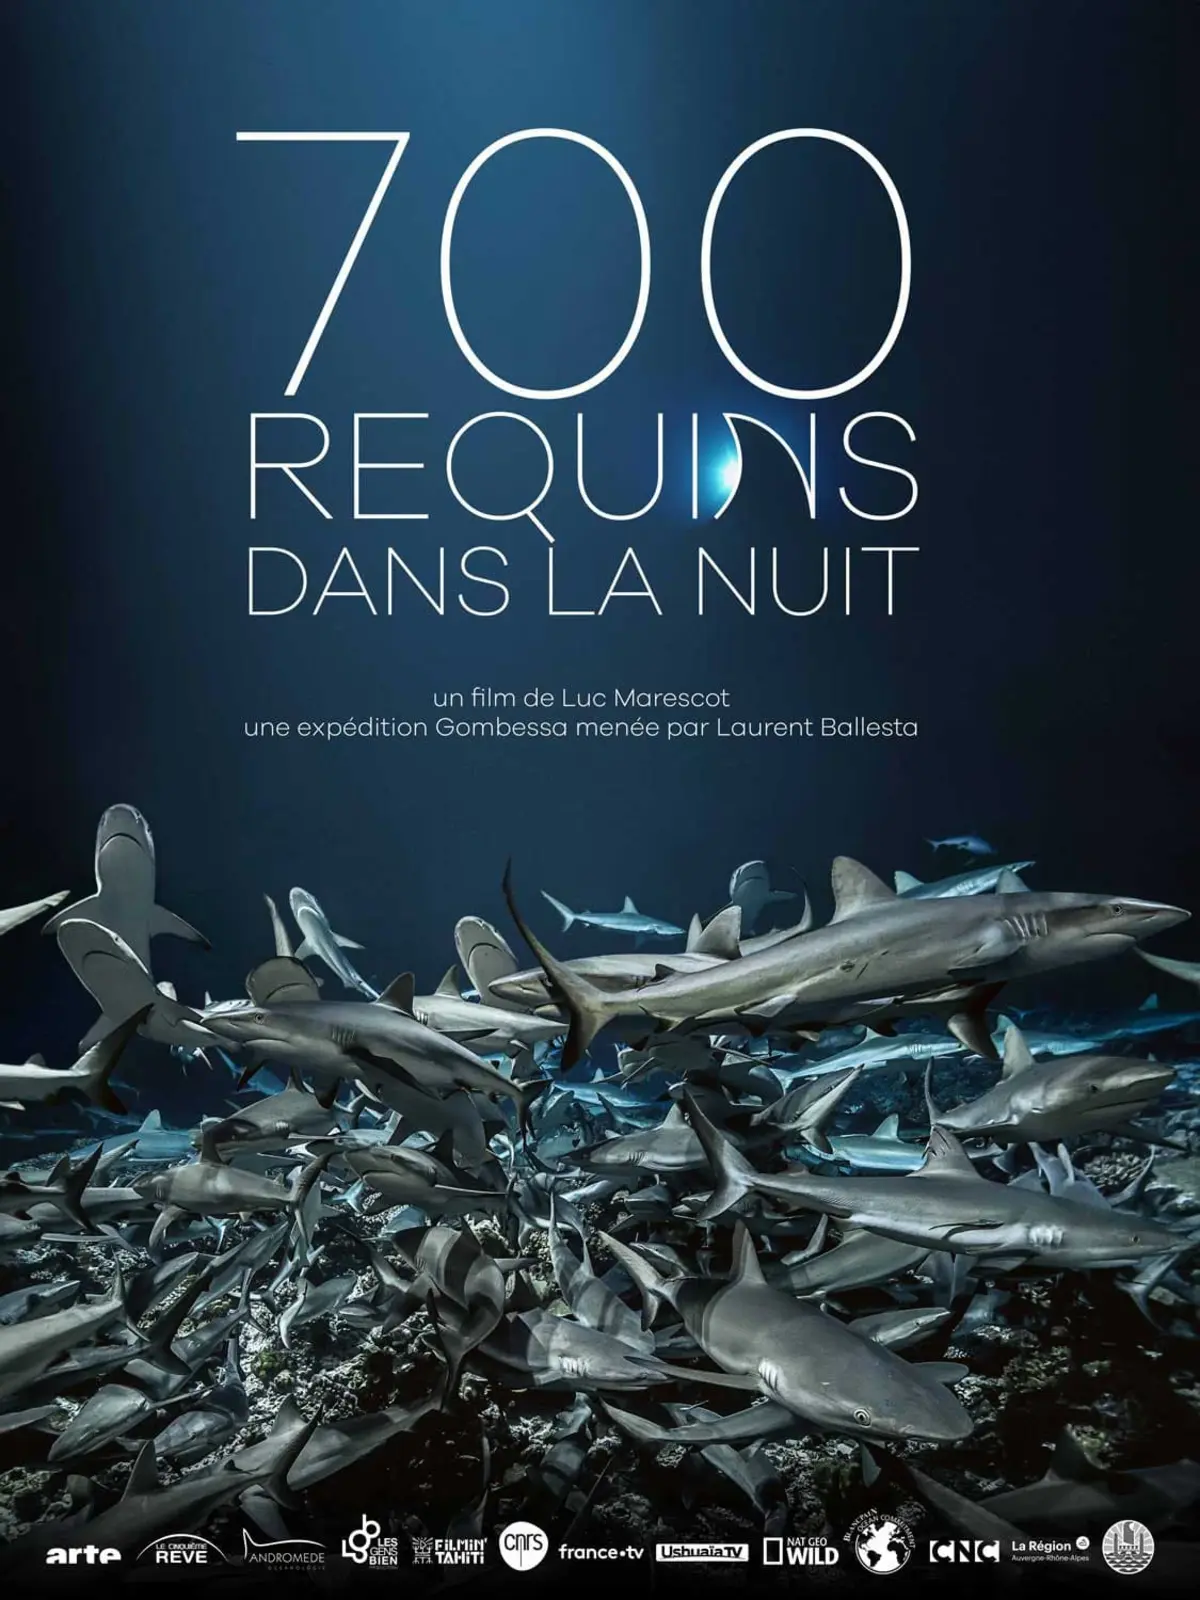 700 requins dans la nuit